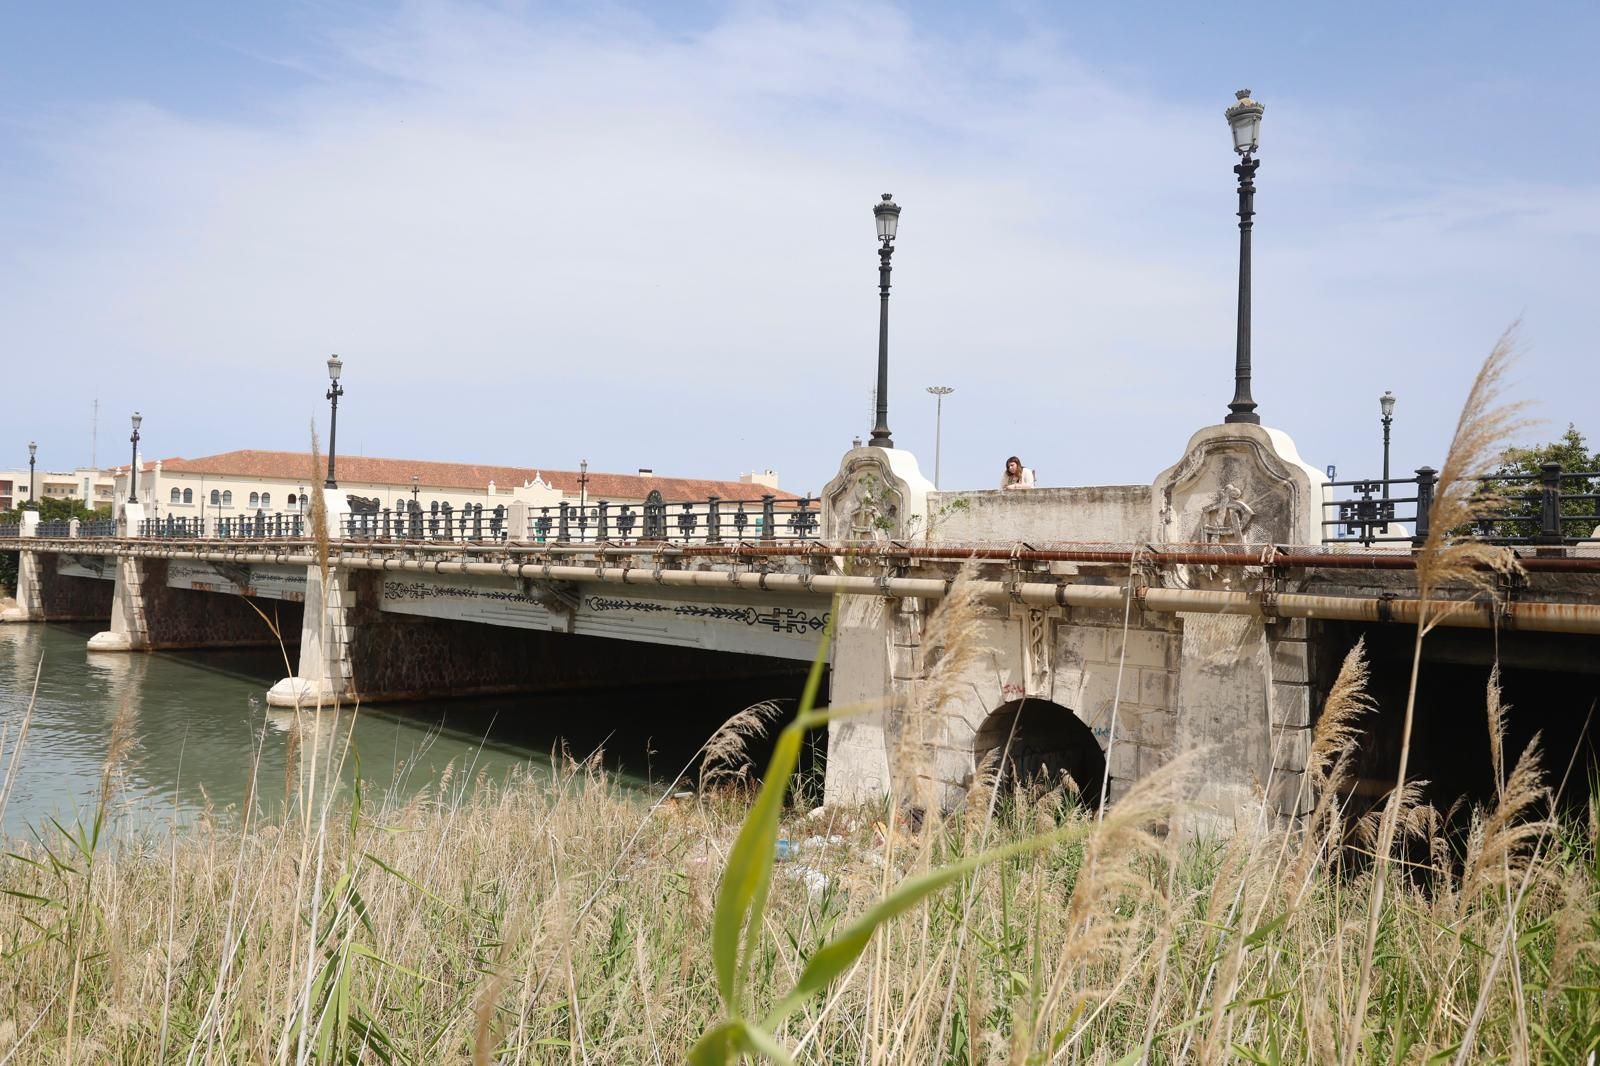 El puente de Astilleros, completamente degradado y a rebosar de basura